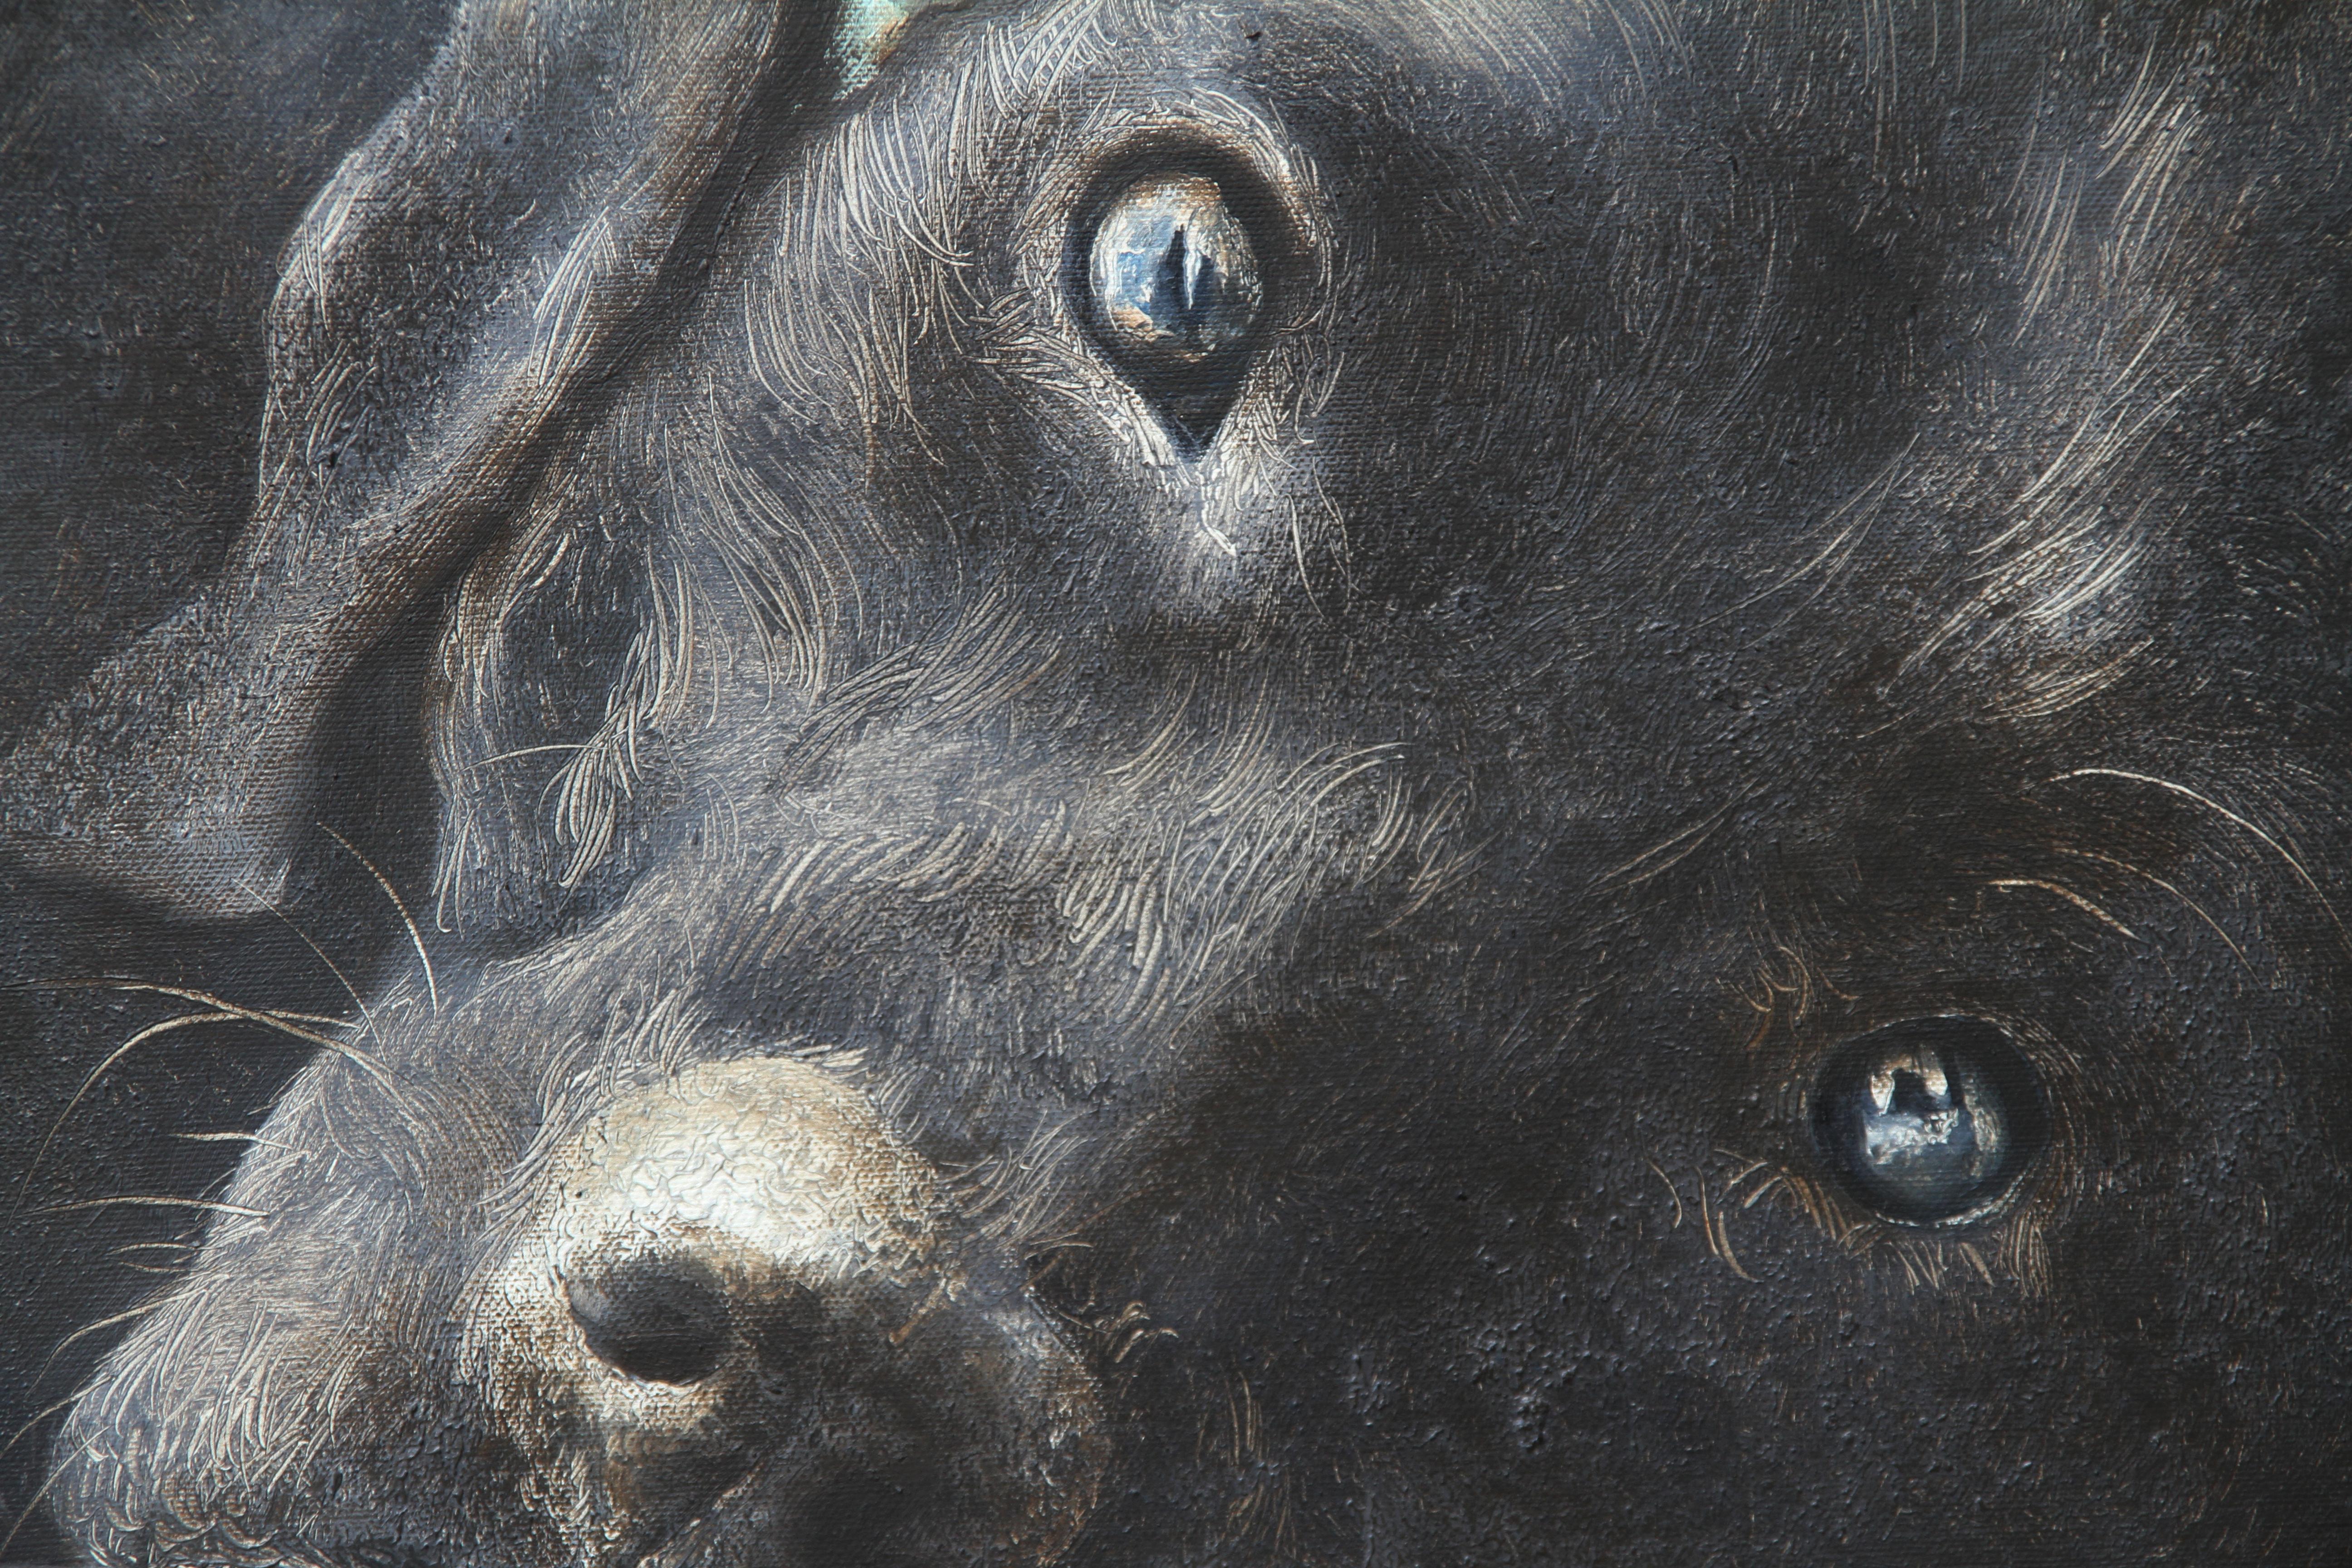 Propriétaire (chien labrador noir, femme endormie, robe vintage, animal, peinture surréaliste) - Painting de Rudolf Kosow